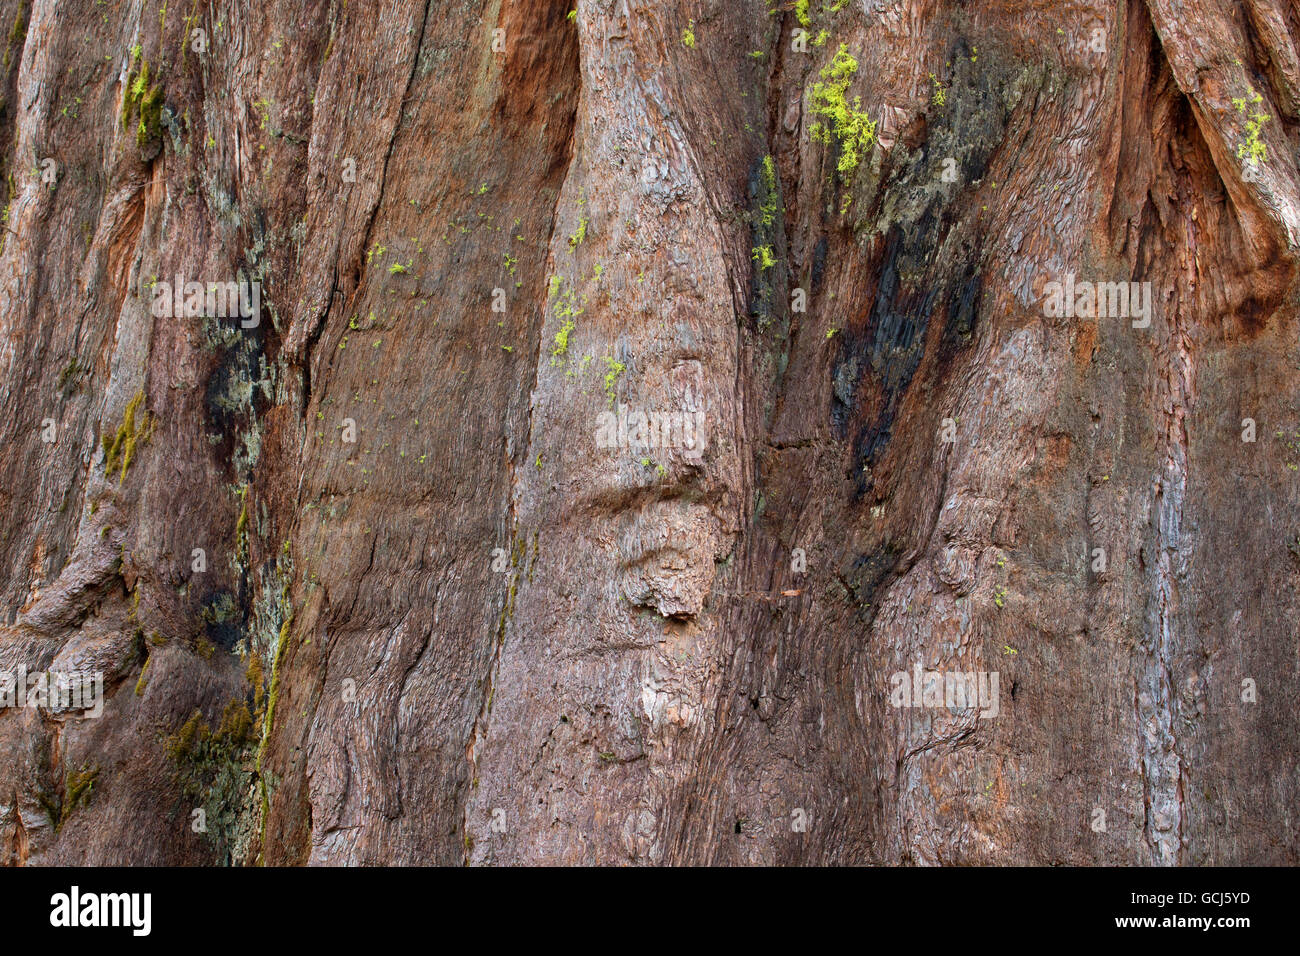 L'écorce de séquoia en Amérique du Grove, parc d'État Calaveras Big Trees, Ebbetts Pass National Scenic Byway, Californie Banque D'Images